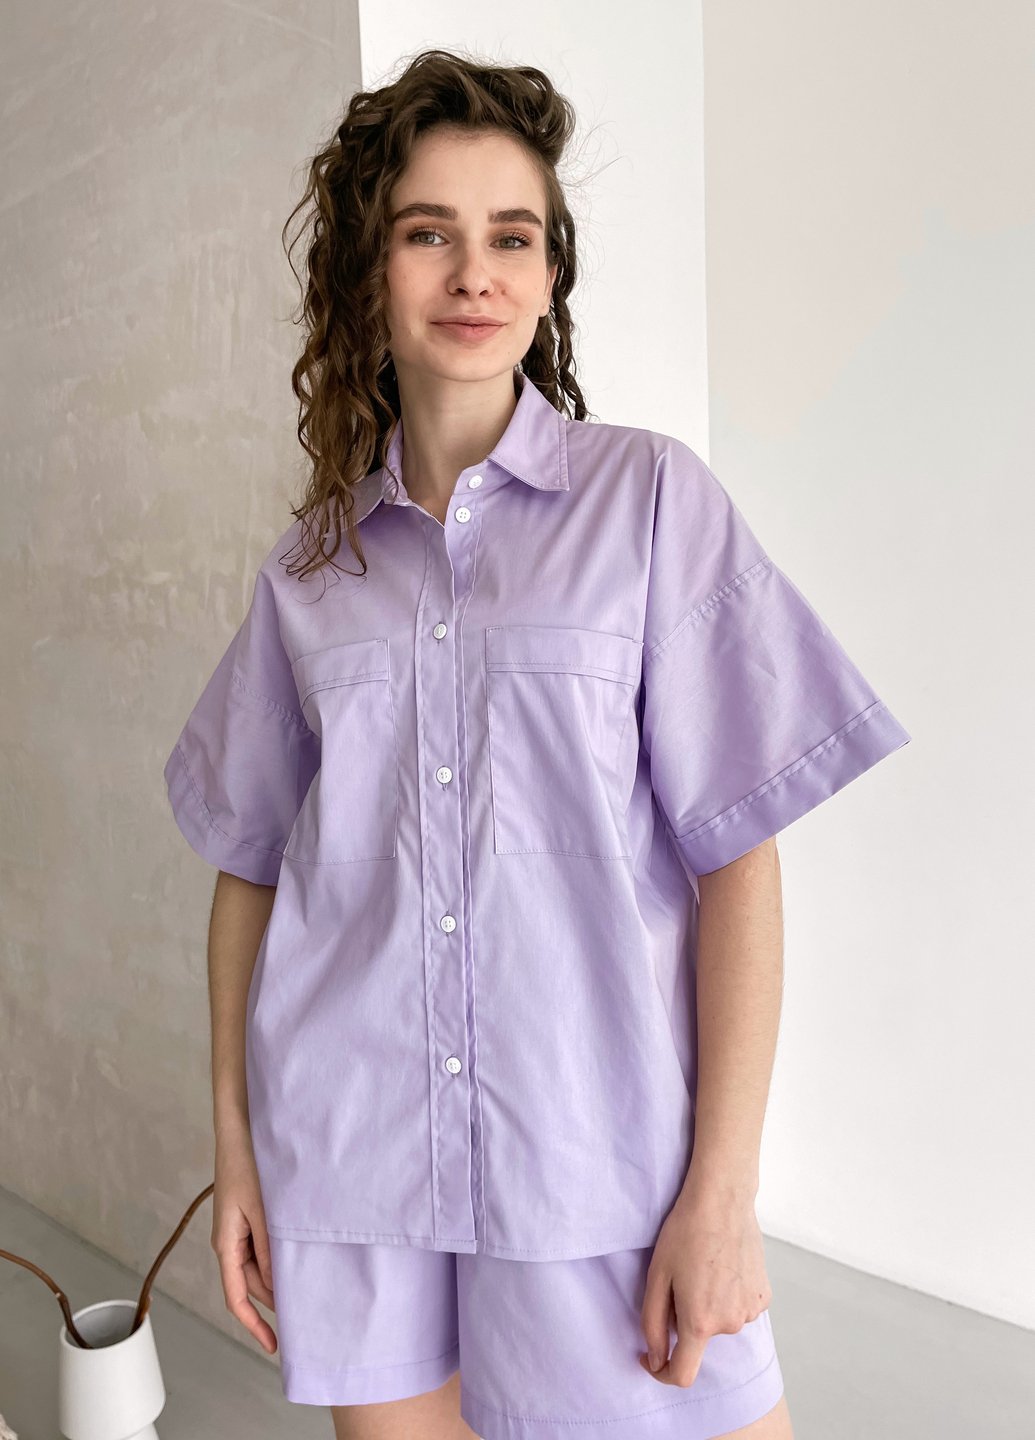 Купить Хлопковая оверсайз рубашка женская Merlini Борнео 200000182, размер 42-44 в интернет-магазине